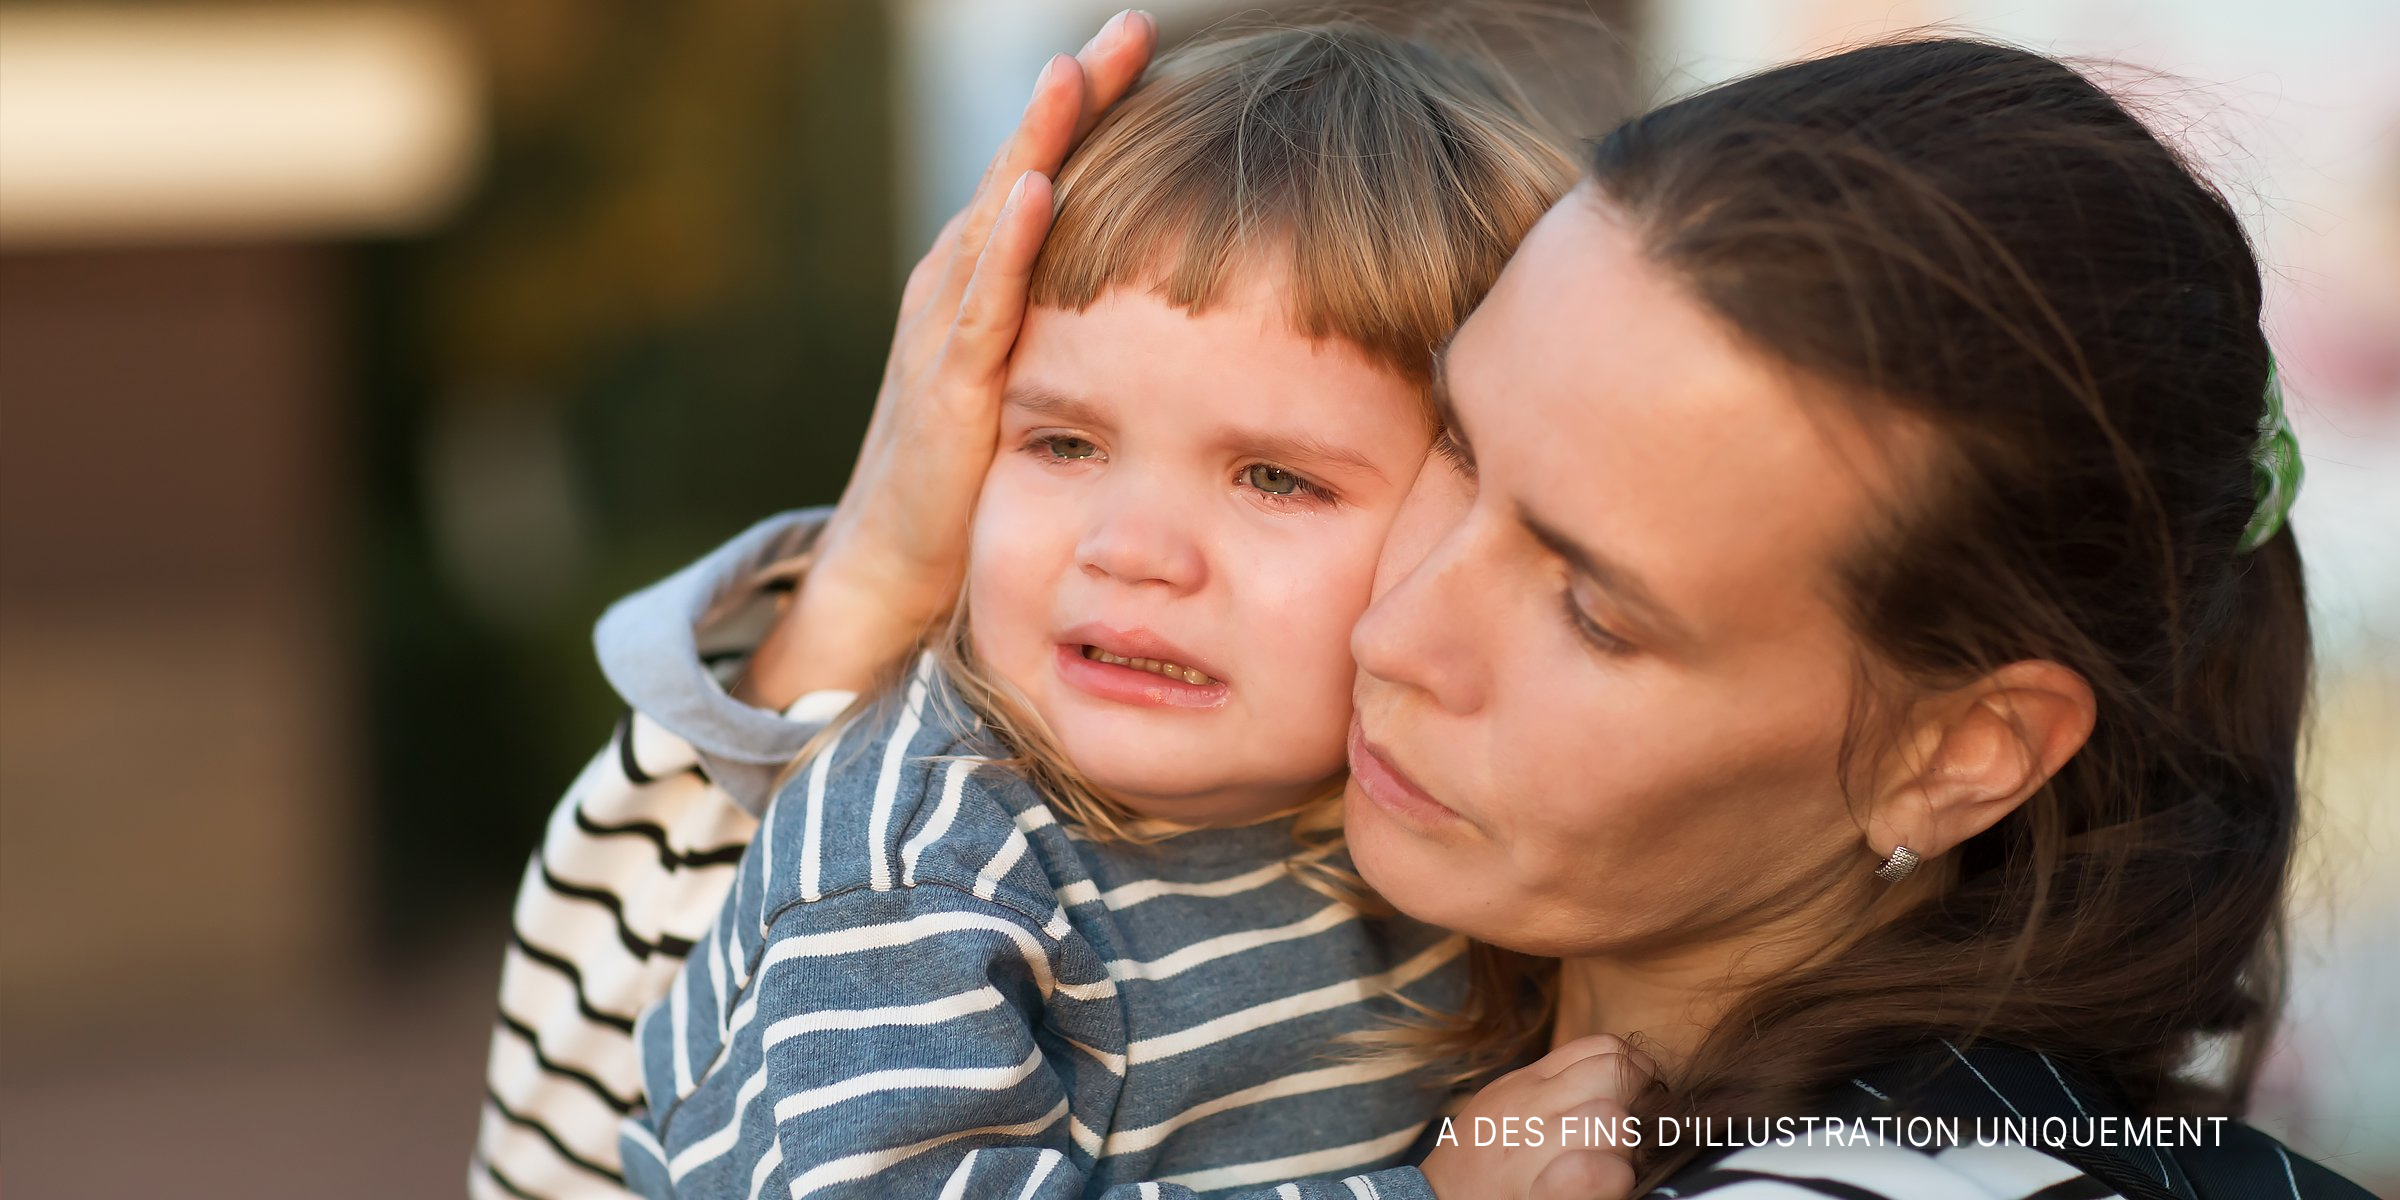 Une femme console un enfant qui pleure. | Source : Shutterstock